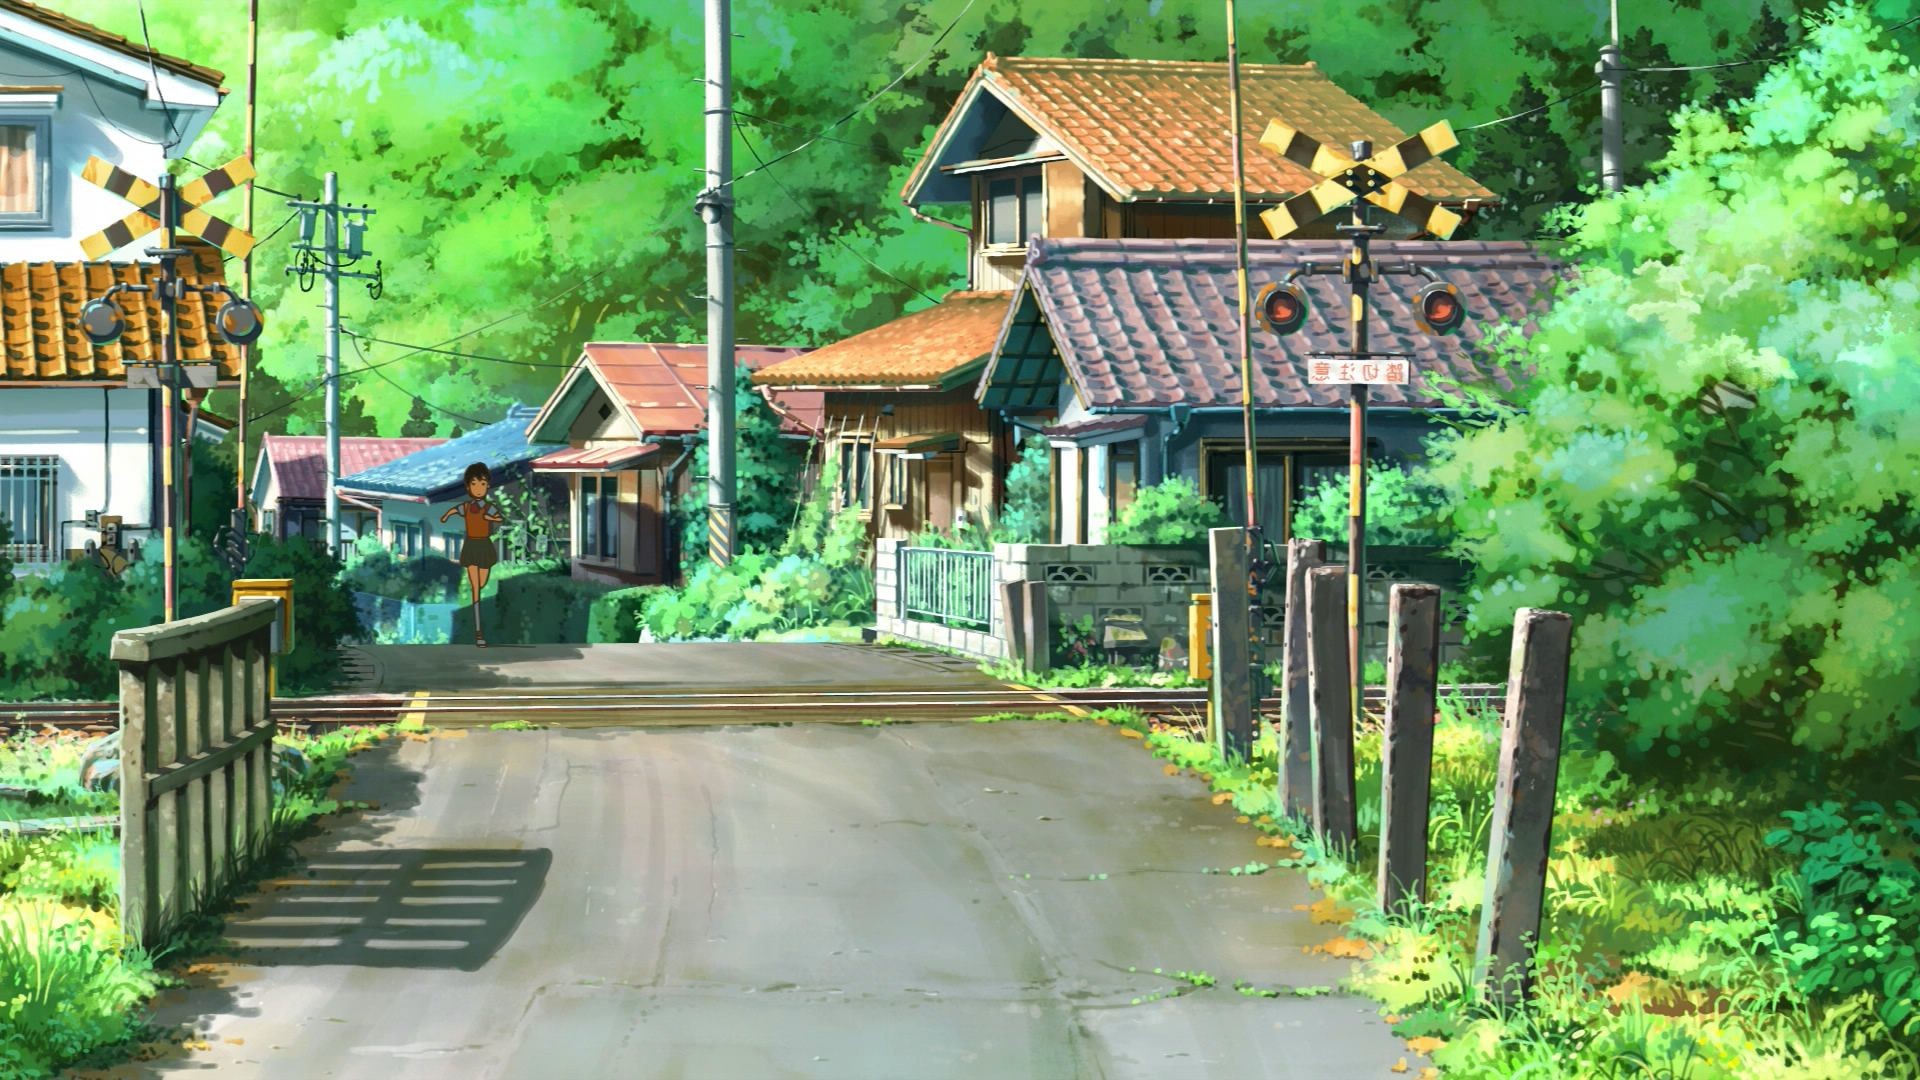 Phong cảnh làng anime đẹp như mơ sẽ mang đến cho bạn cảm giác như đang sống trong một thế giới đầy phép thuật. Tận hưởng nét đẹp thần tiên của cảnh quan làng anime, và hãy để những bức ảnh mang đến cảm xúc thanh tịnh và hạnh phúc.